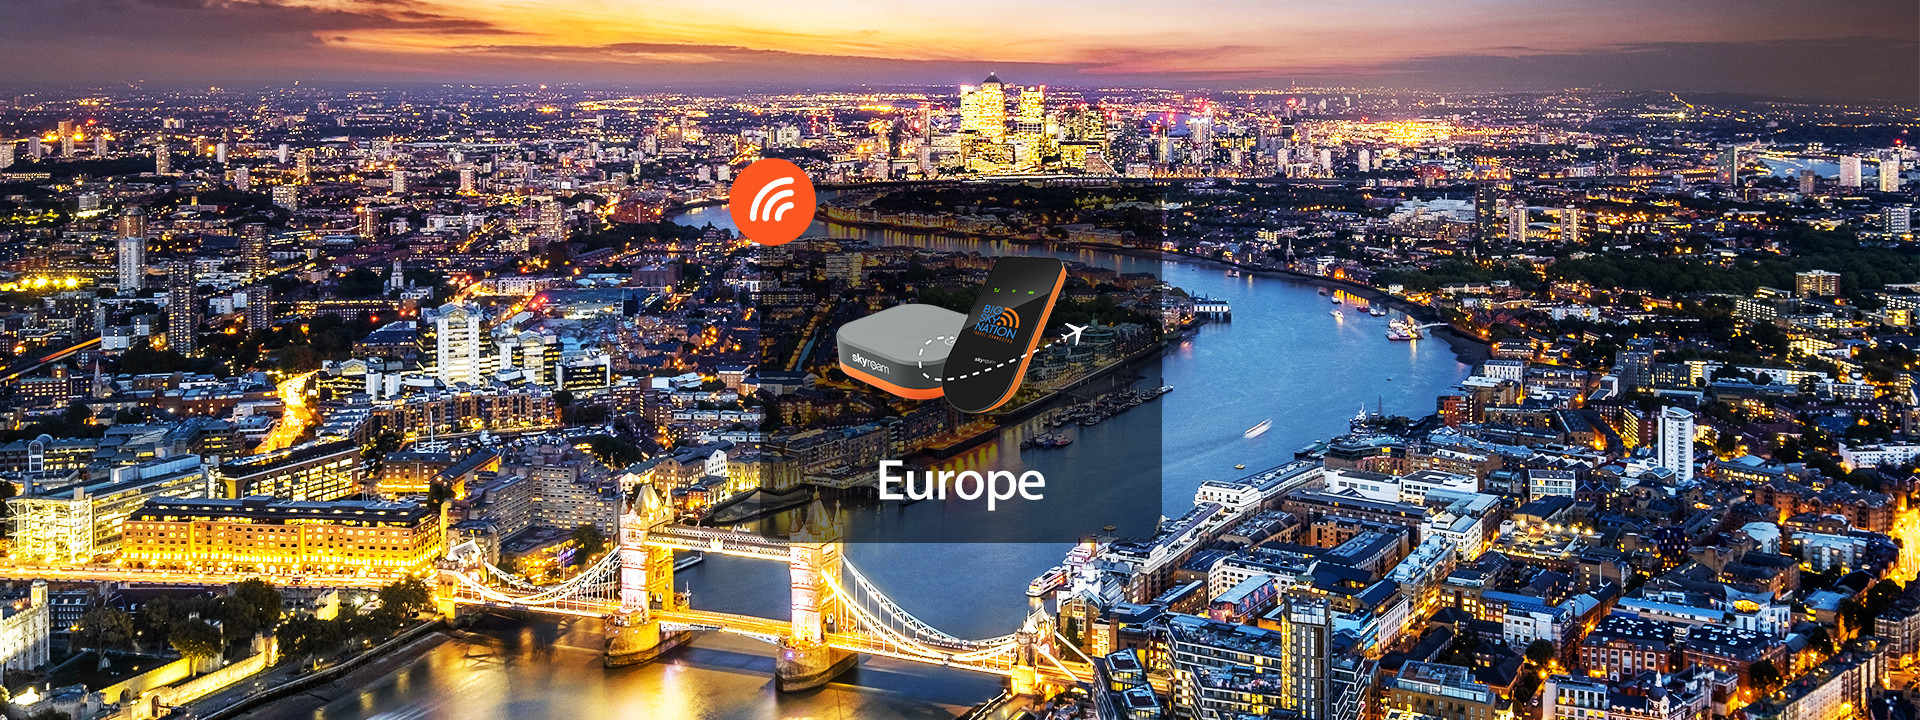 歐洲 4G LTE WiFi 分享器（馬尼拉機場領取）